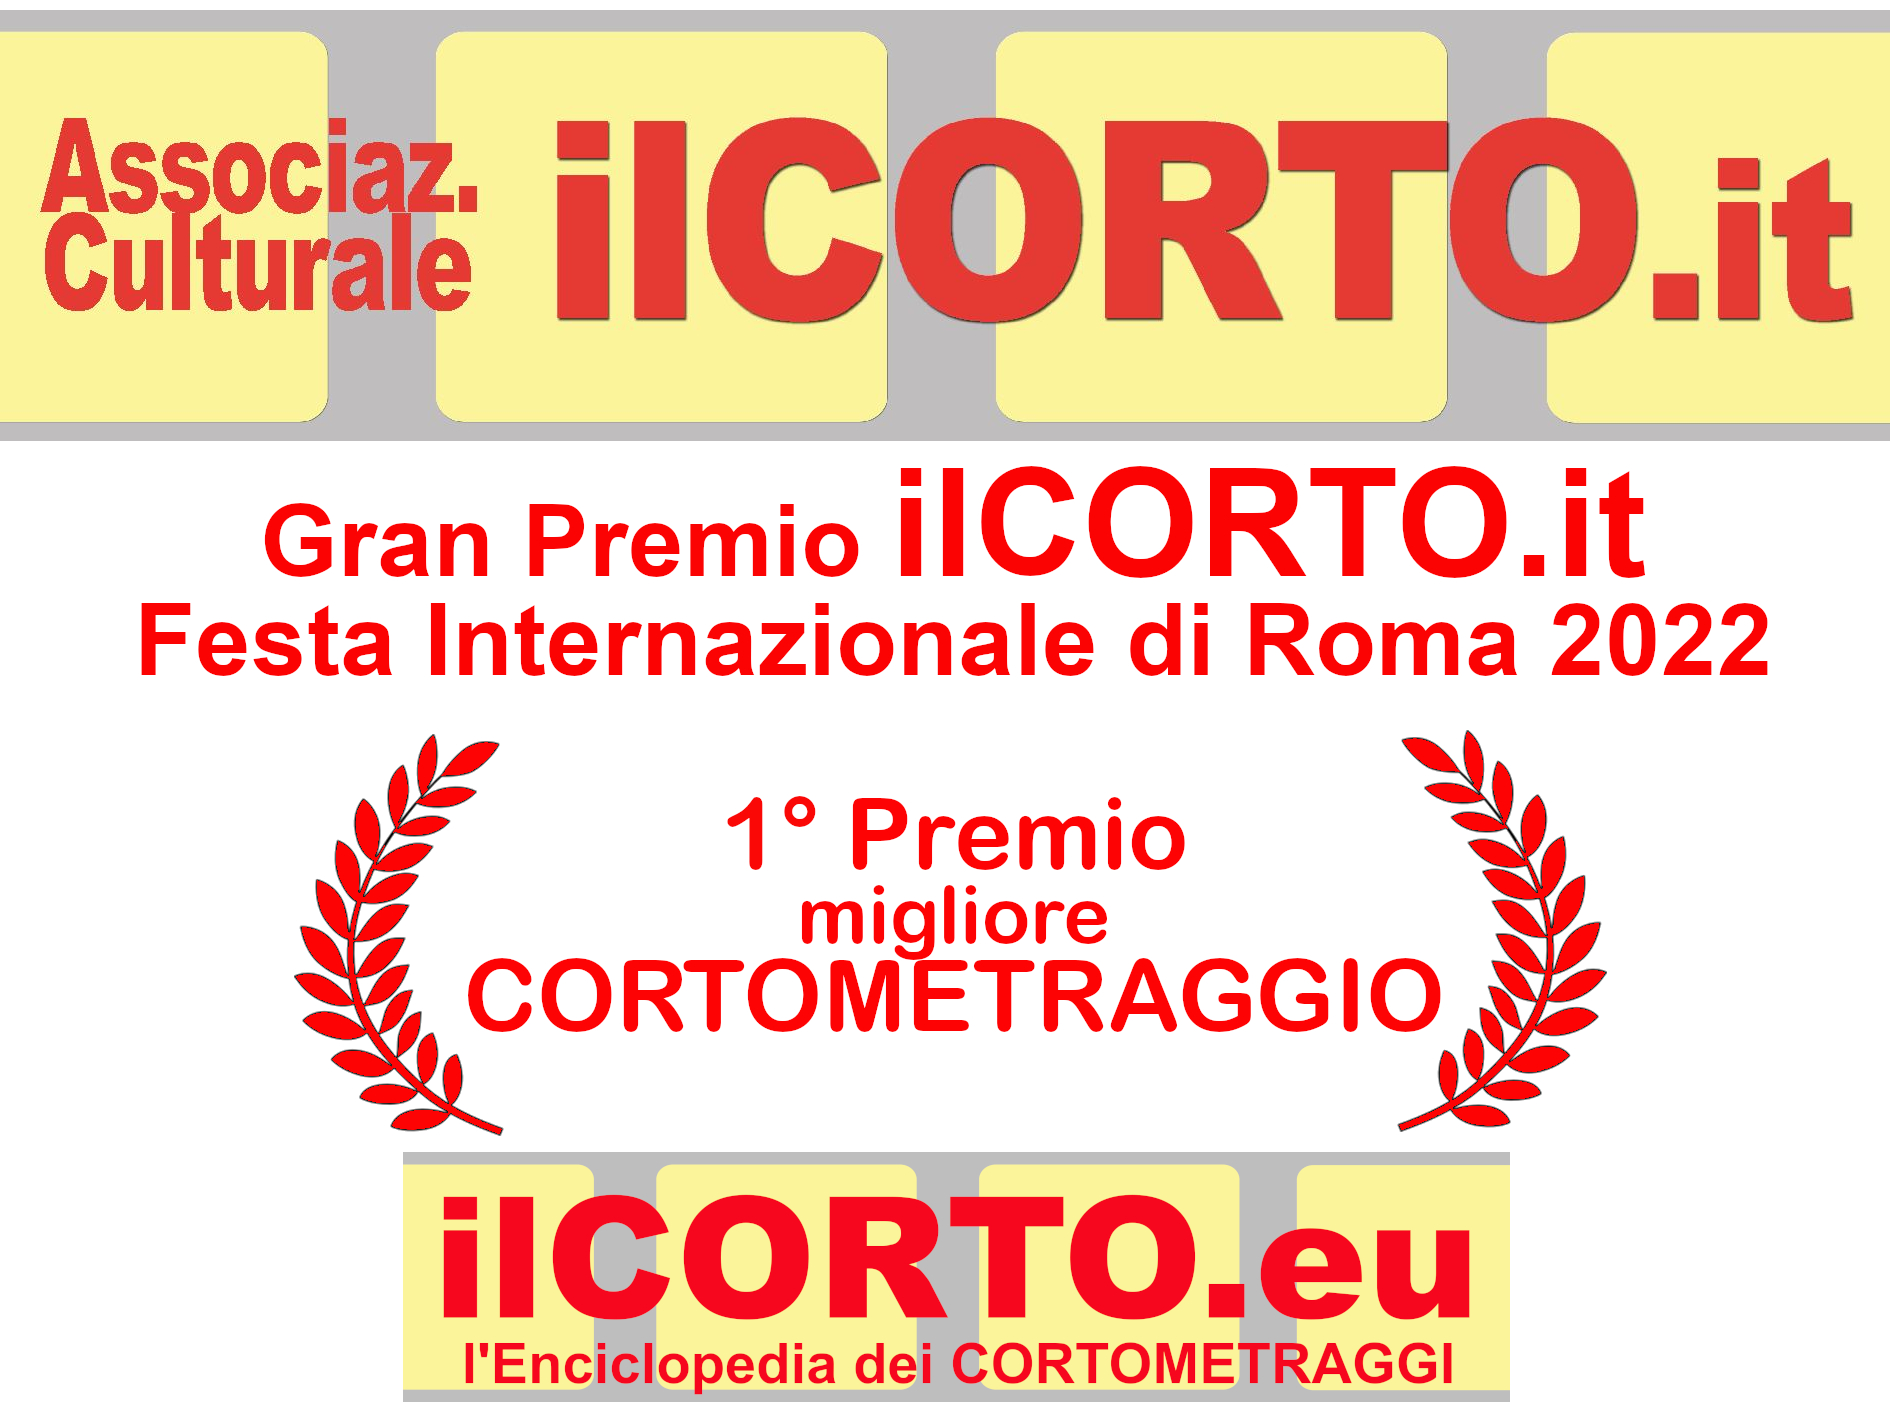 ILCORTO.IT Festa Internazionale di Roma 2022